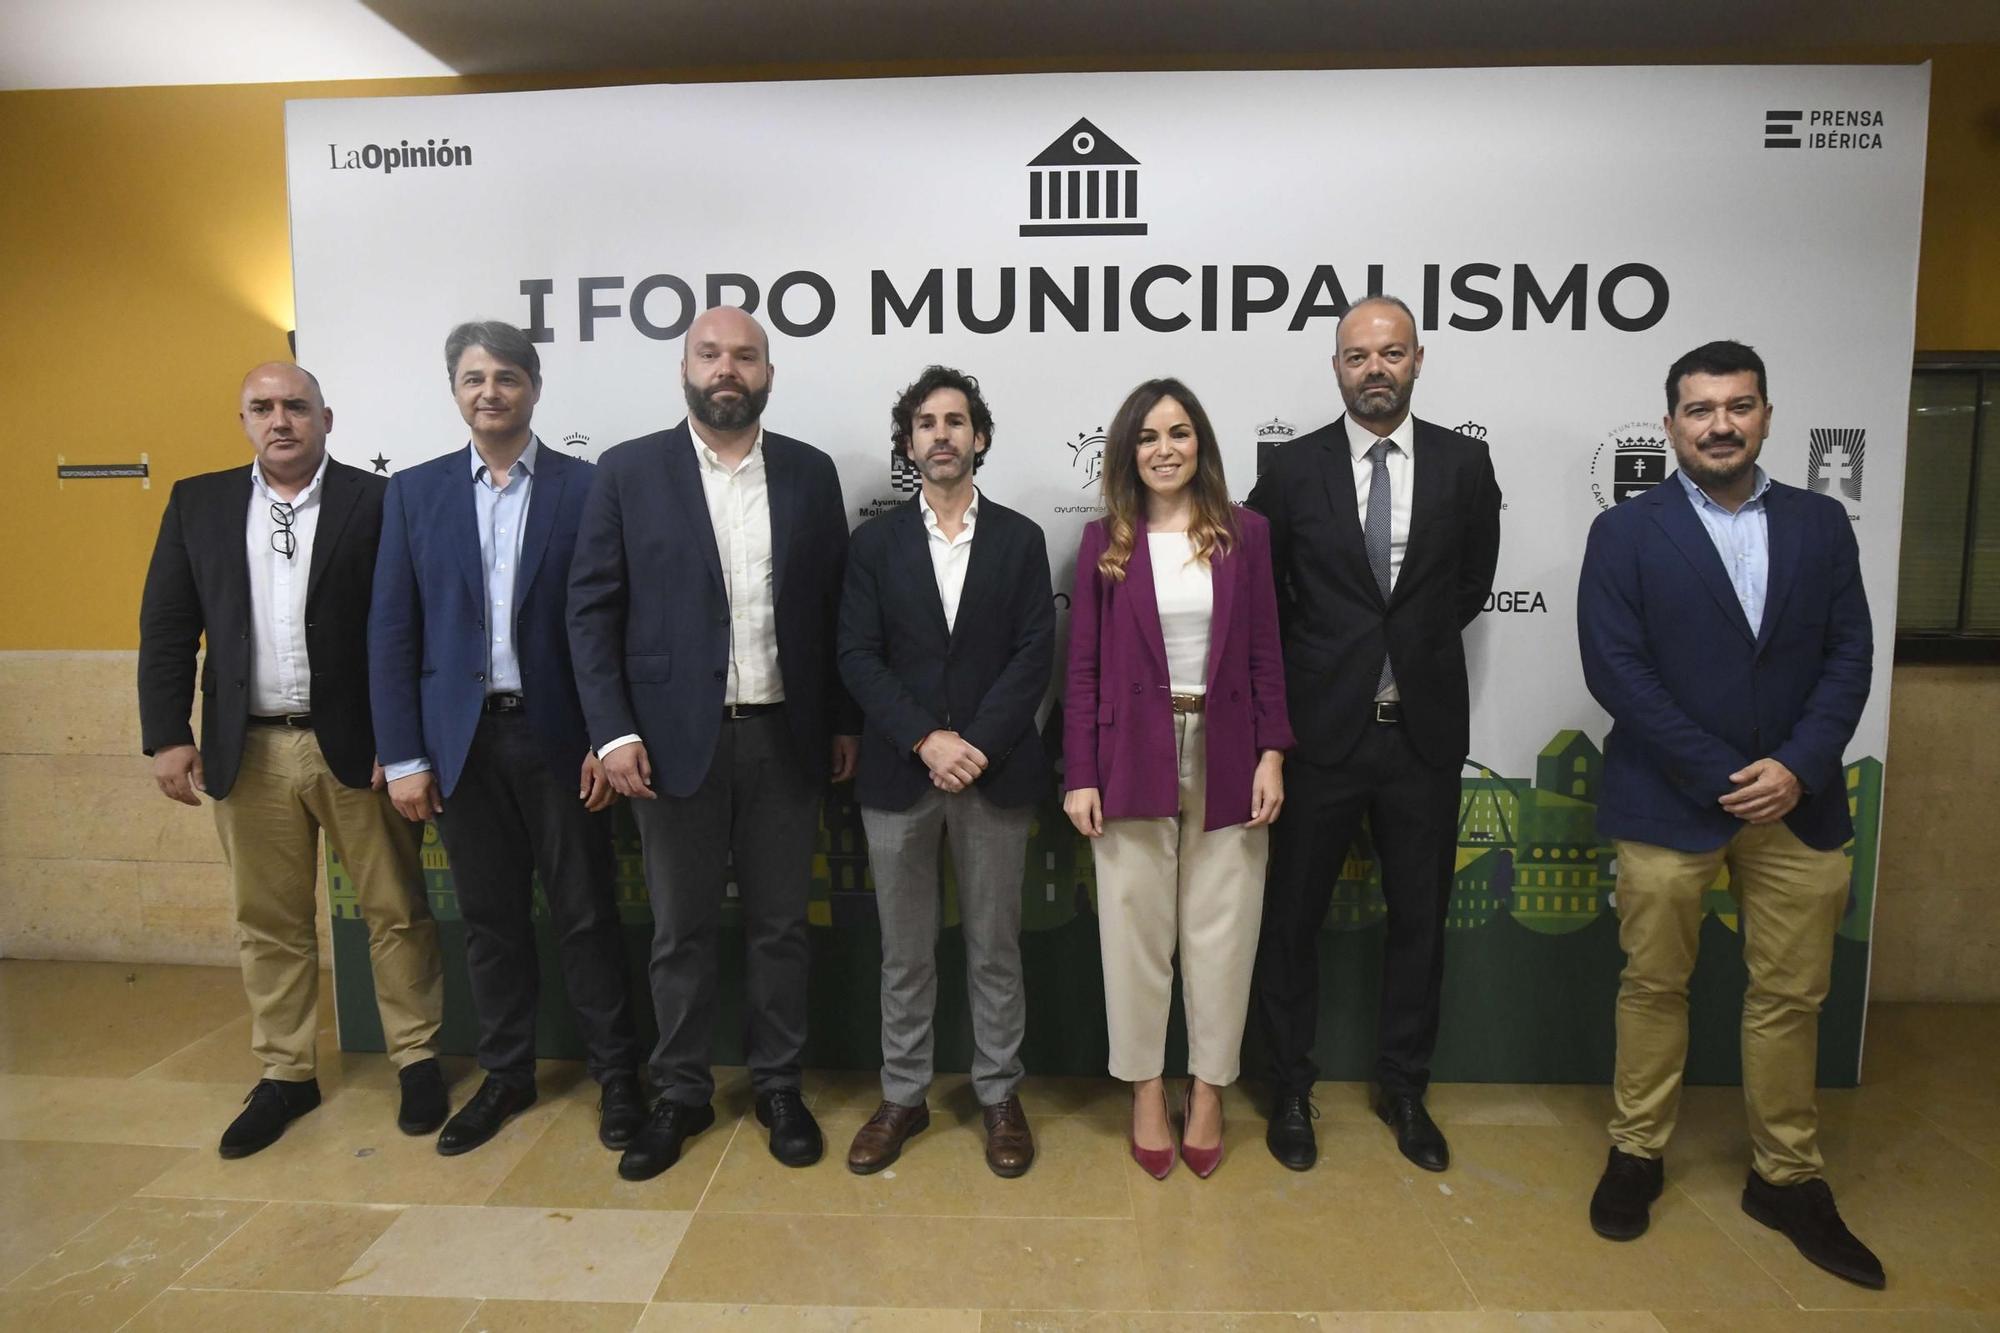 El I Foro de Municipalismo organizado por La Opinión, en imágenes